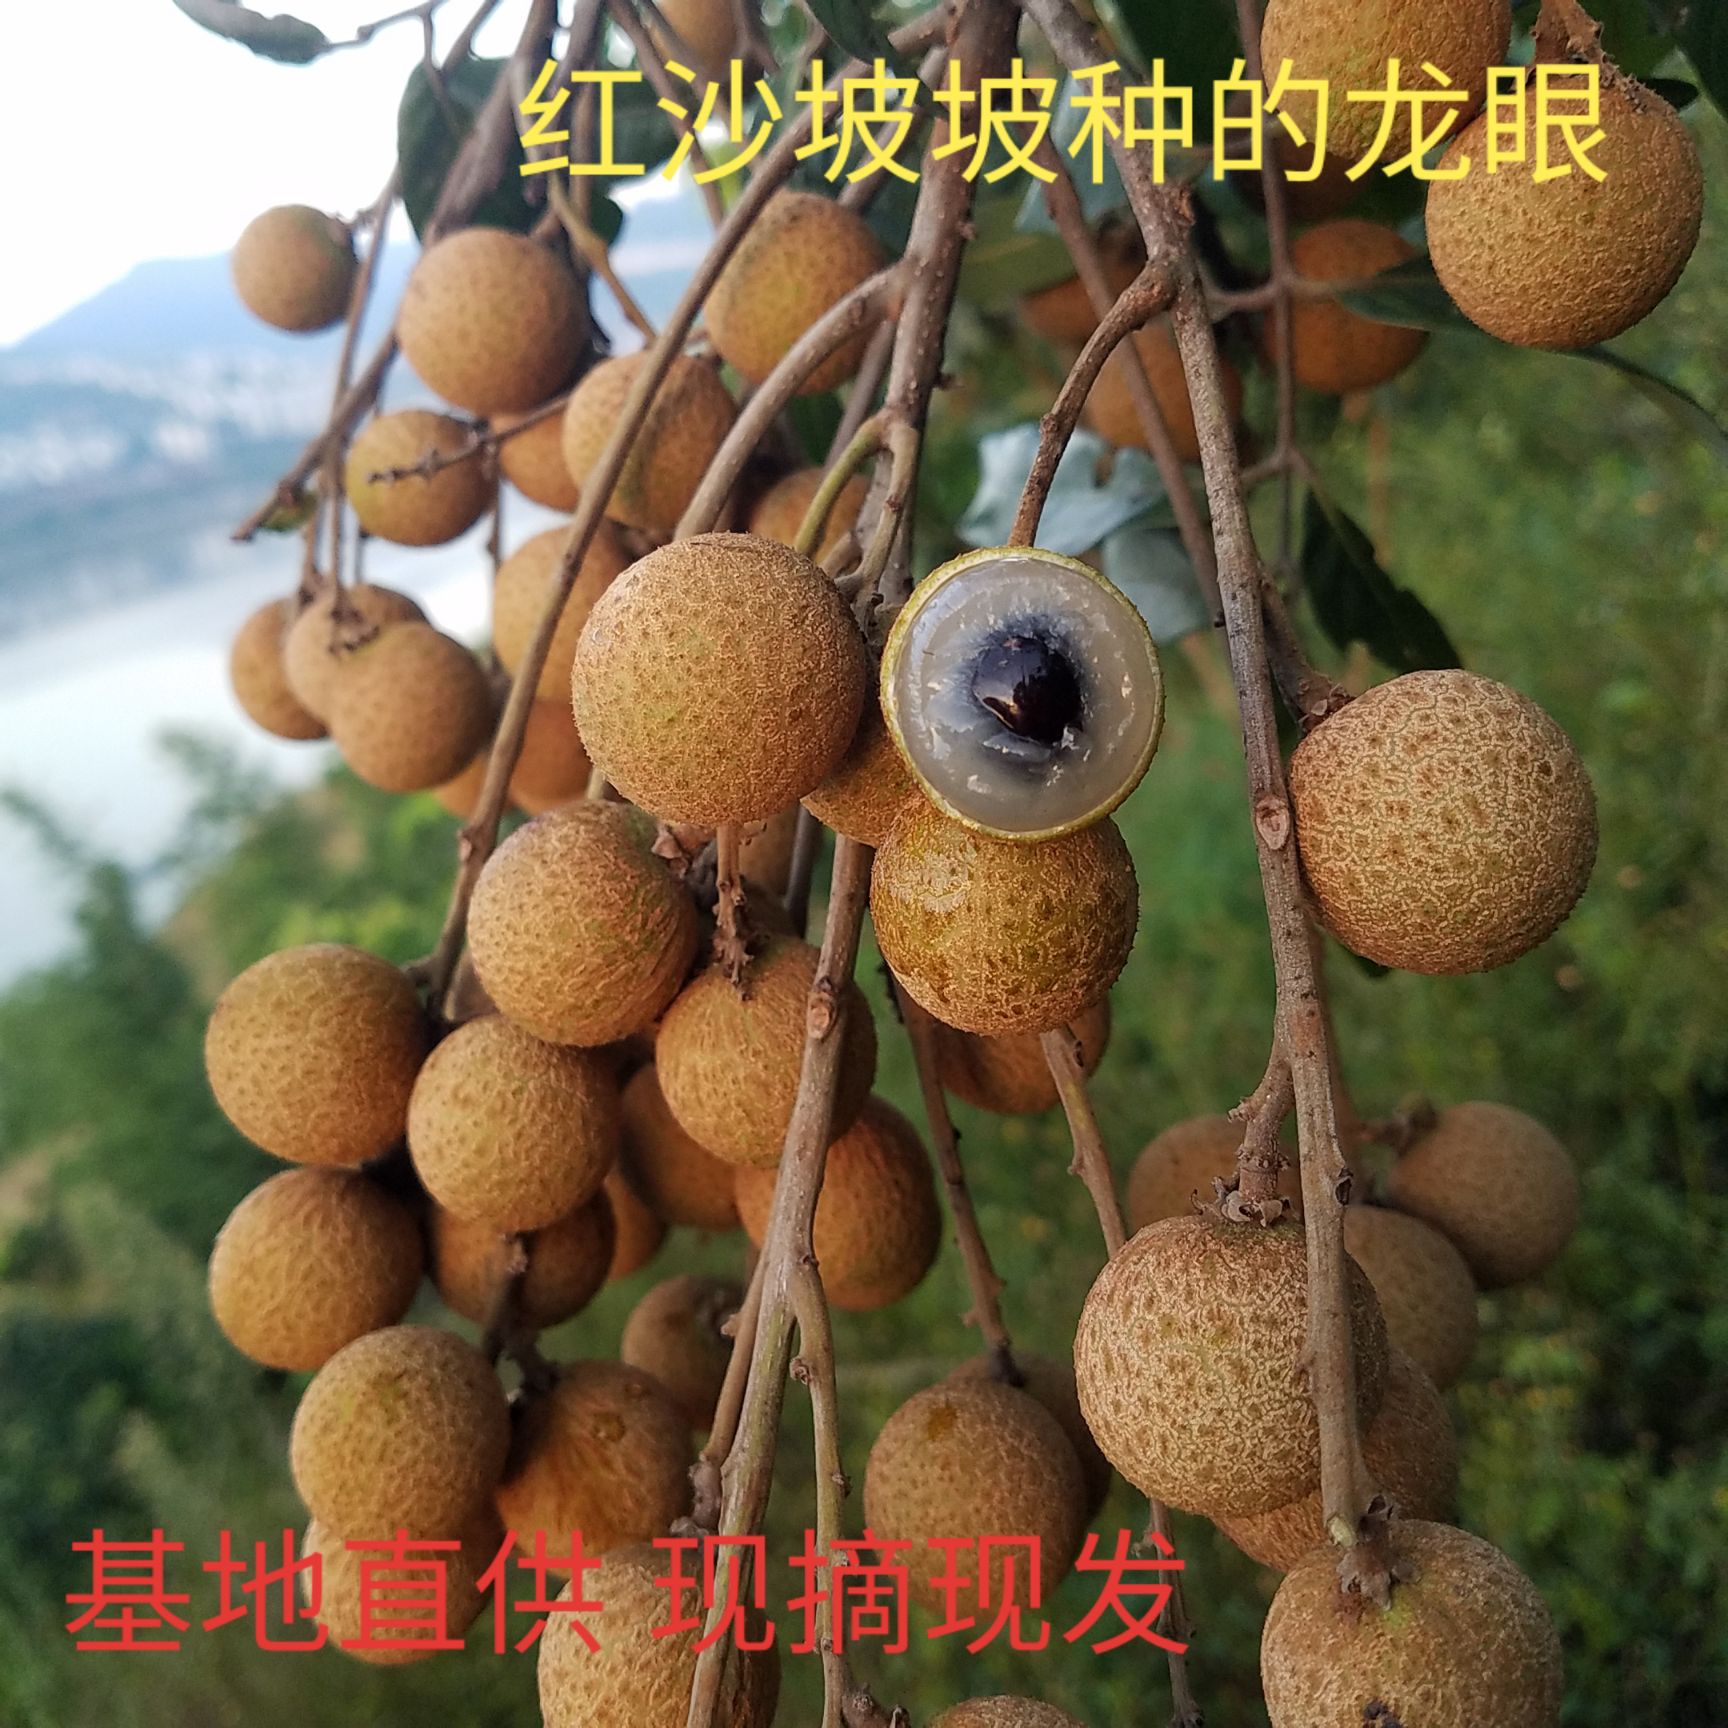 屏山县龙眼  5斤装顺丰包邮红沙坡坡种植的水果能给您不一样的味道。